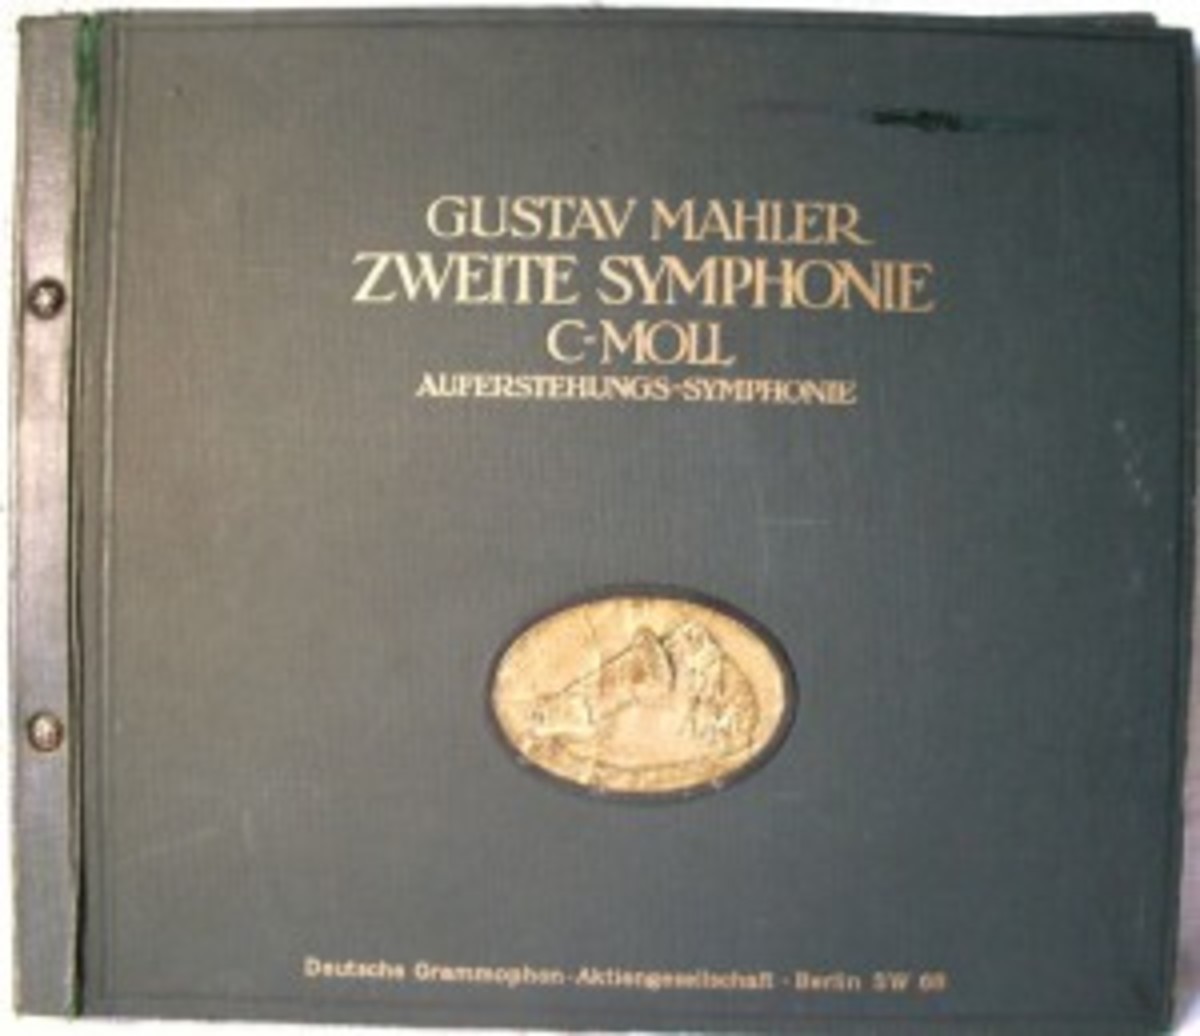 Gustav Mahler symphony